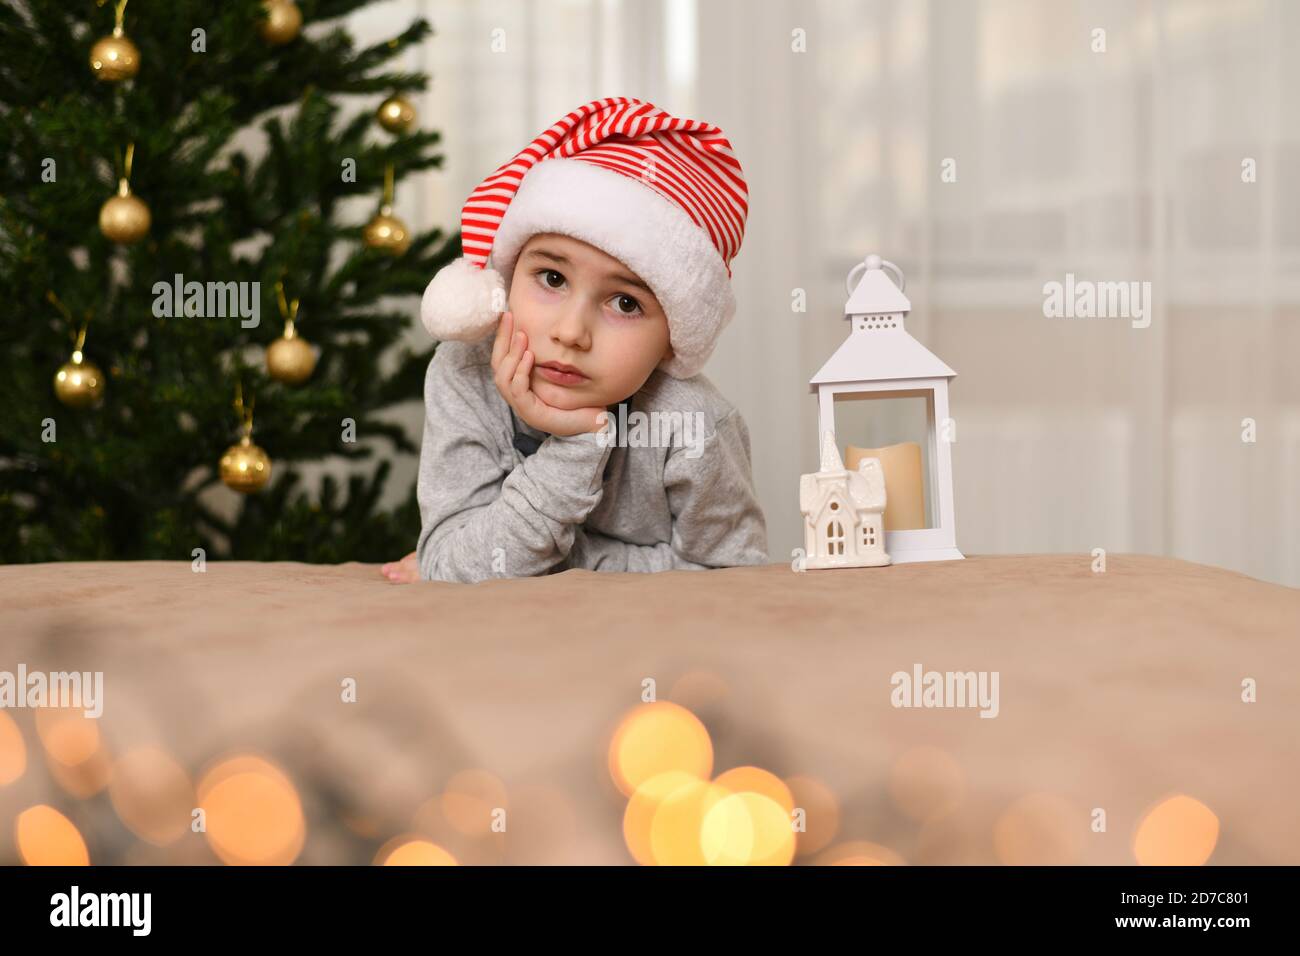 Un garçon aux yeux tristes, assis avec sa main tenant sa joue de main. Vêtu de casquette. Je me suis penché près de l'arbre de Noël. Banque D'Images